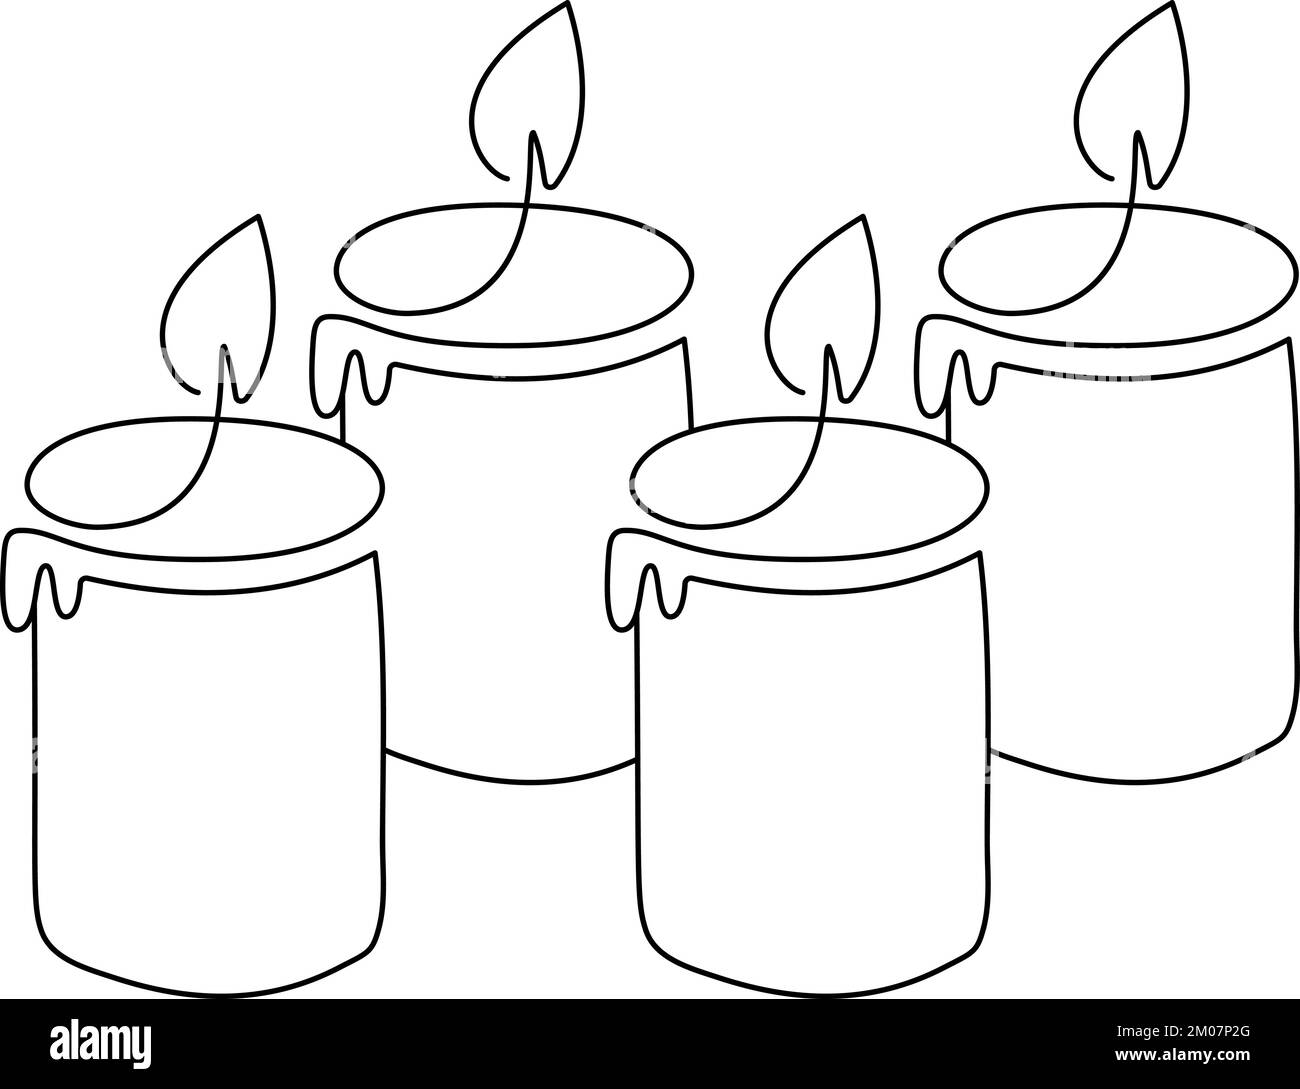 Handgezeichneter Vektor mit einer Linie, der vier 4 Kerzen verbrennt Logo-Symbol. Grußkarte mit Grußkarte, isoliertes Webdesign Stock Vektor